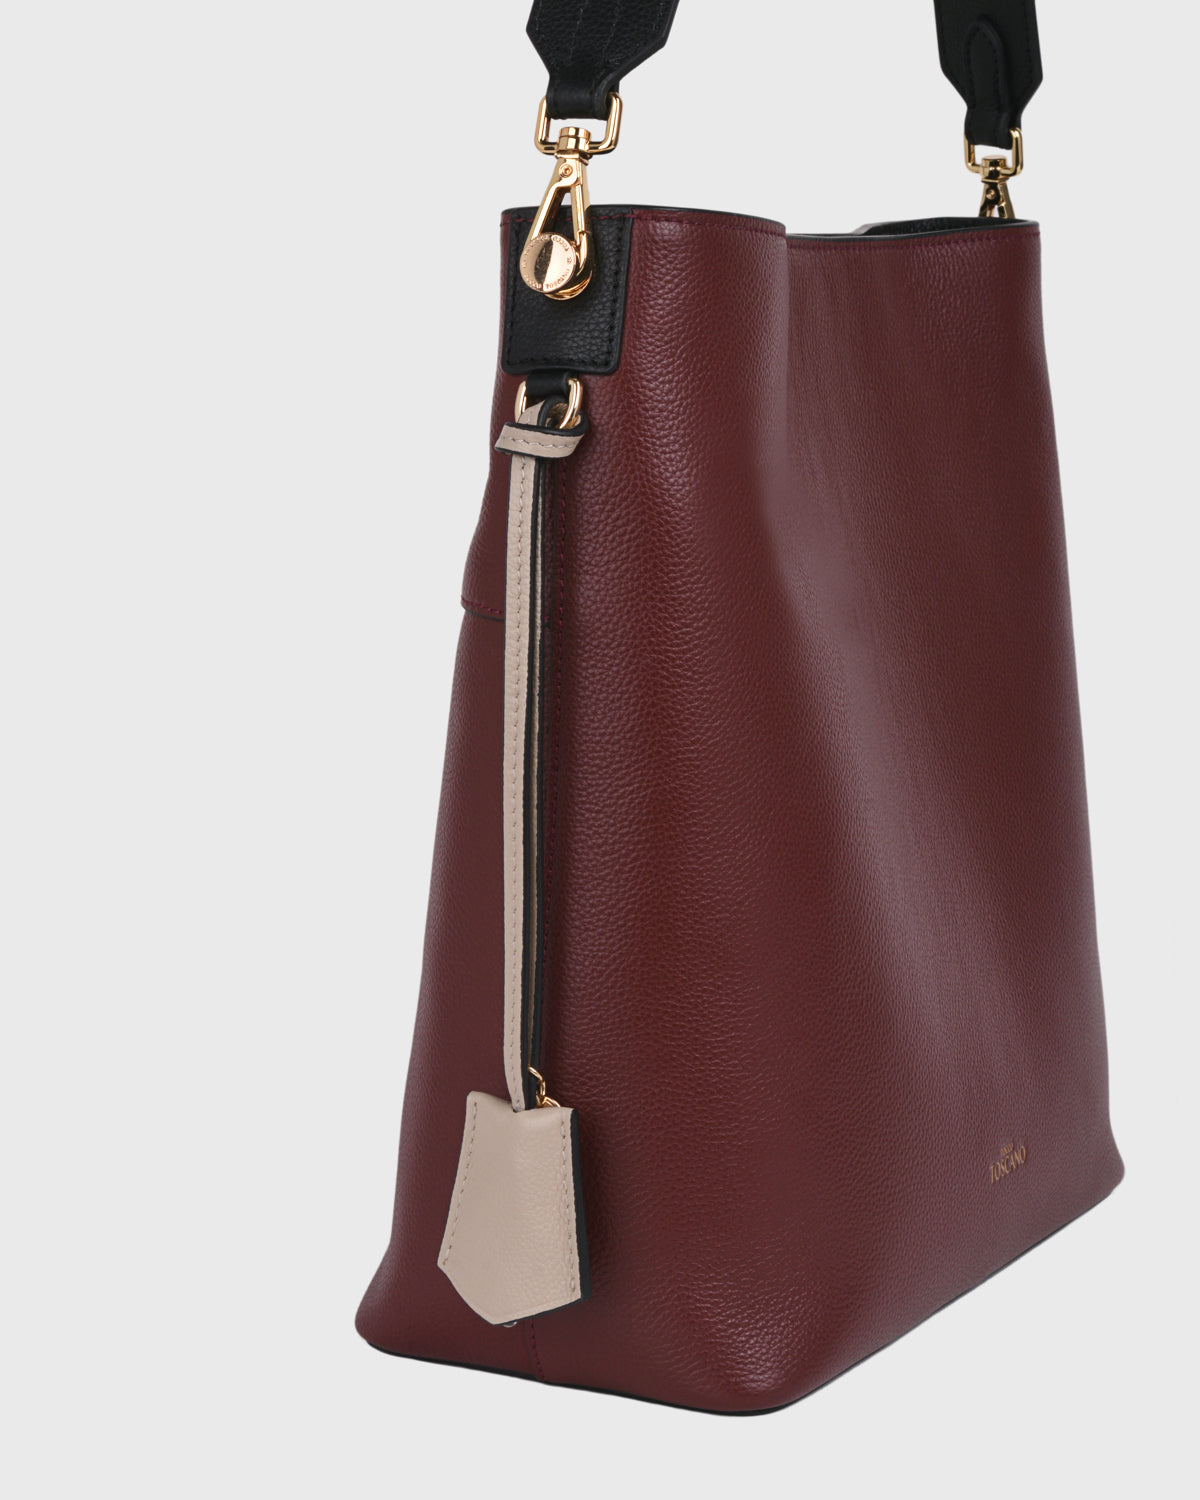 Leather Bag Charm, Luna Charm A3